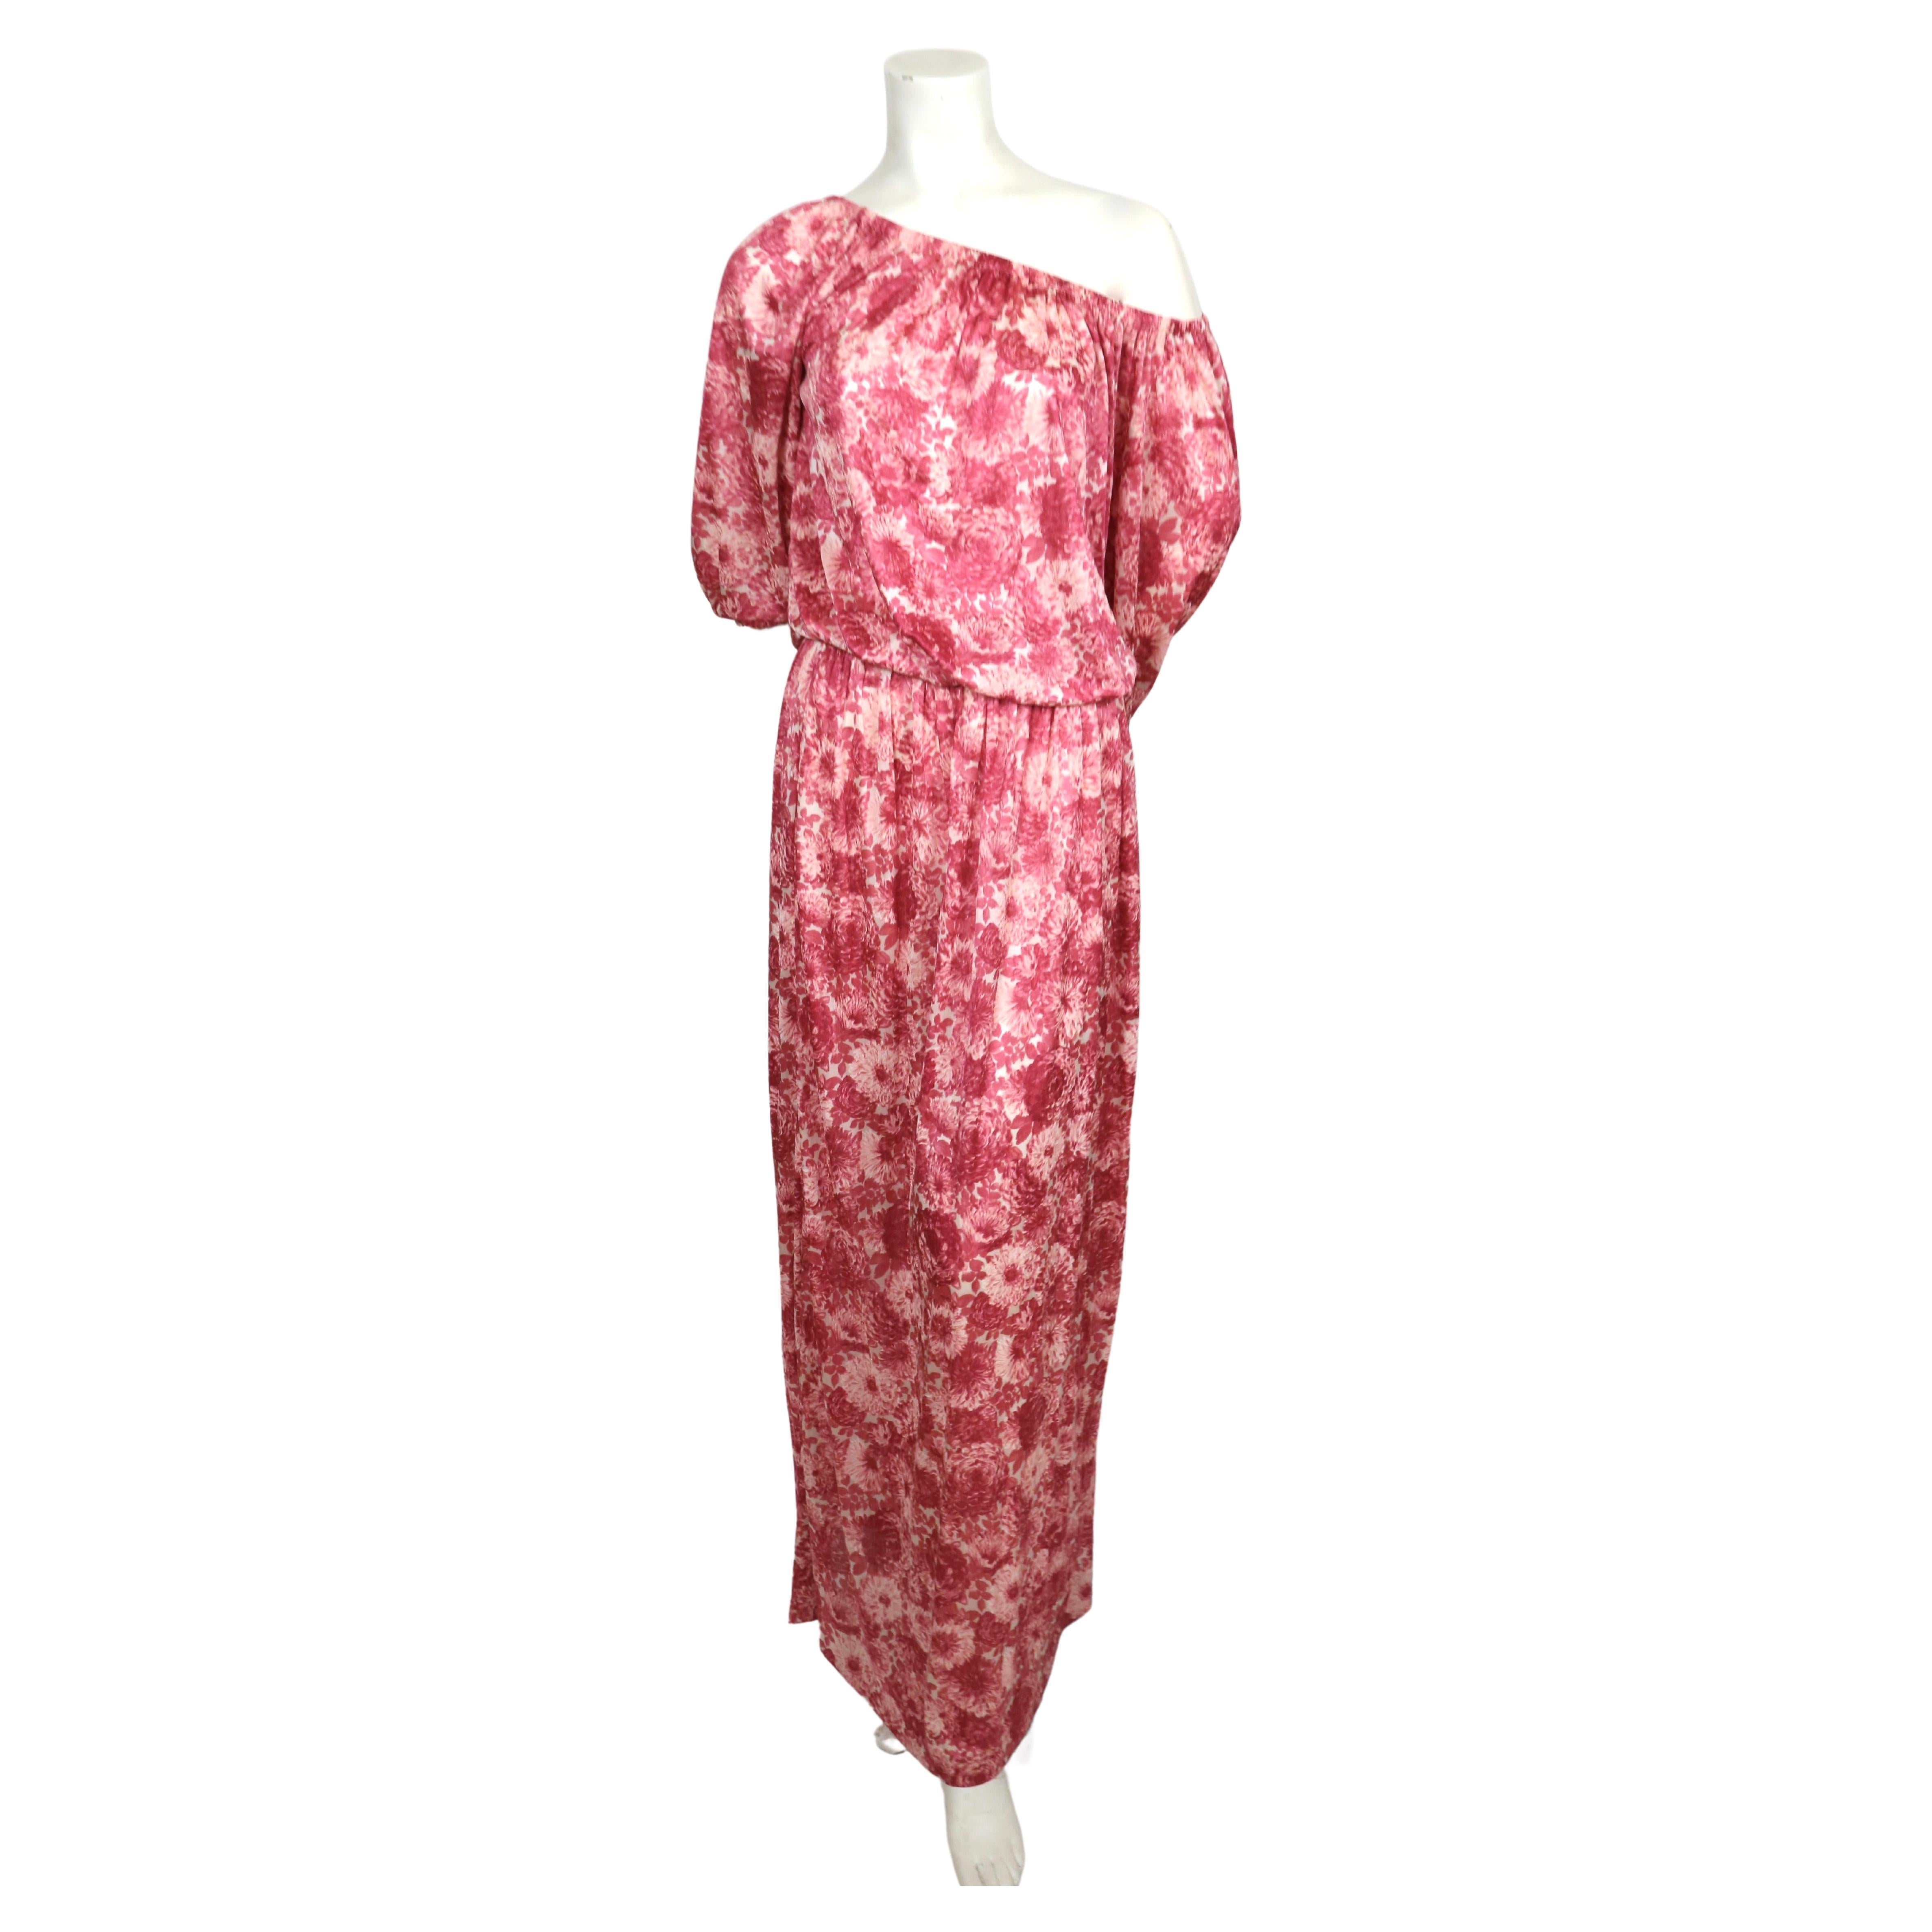 Rosafarbenes Kleid aus Seidenjersey mit Blumendruck und Gummizug an Ausschnitt und Taille, entworfen von Yves Saint Laurent in den 1970er Jahren. Etikettiert eine Französisch Größe 34 jedoch wird dies leicht passen bis zu einem Französisch 38. Durch